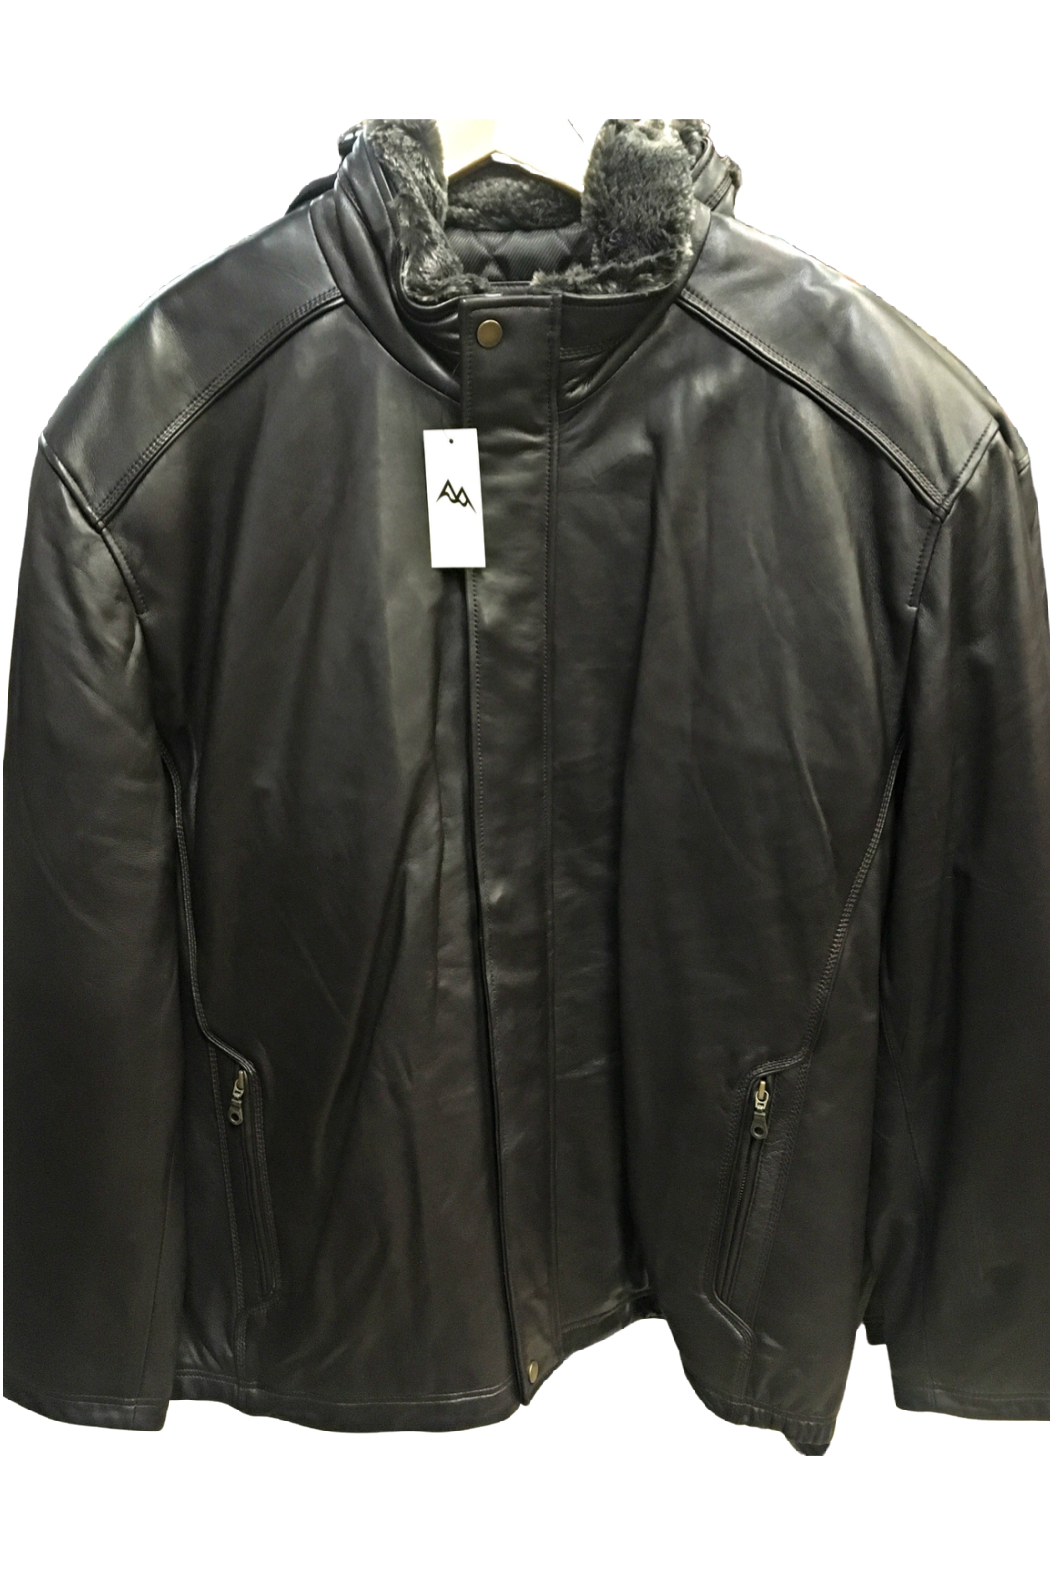 Black Ice Leather Jacket 5116